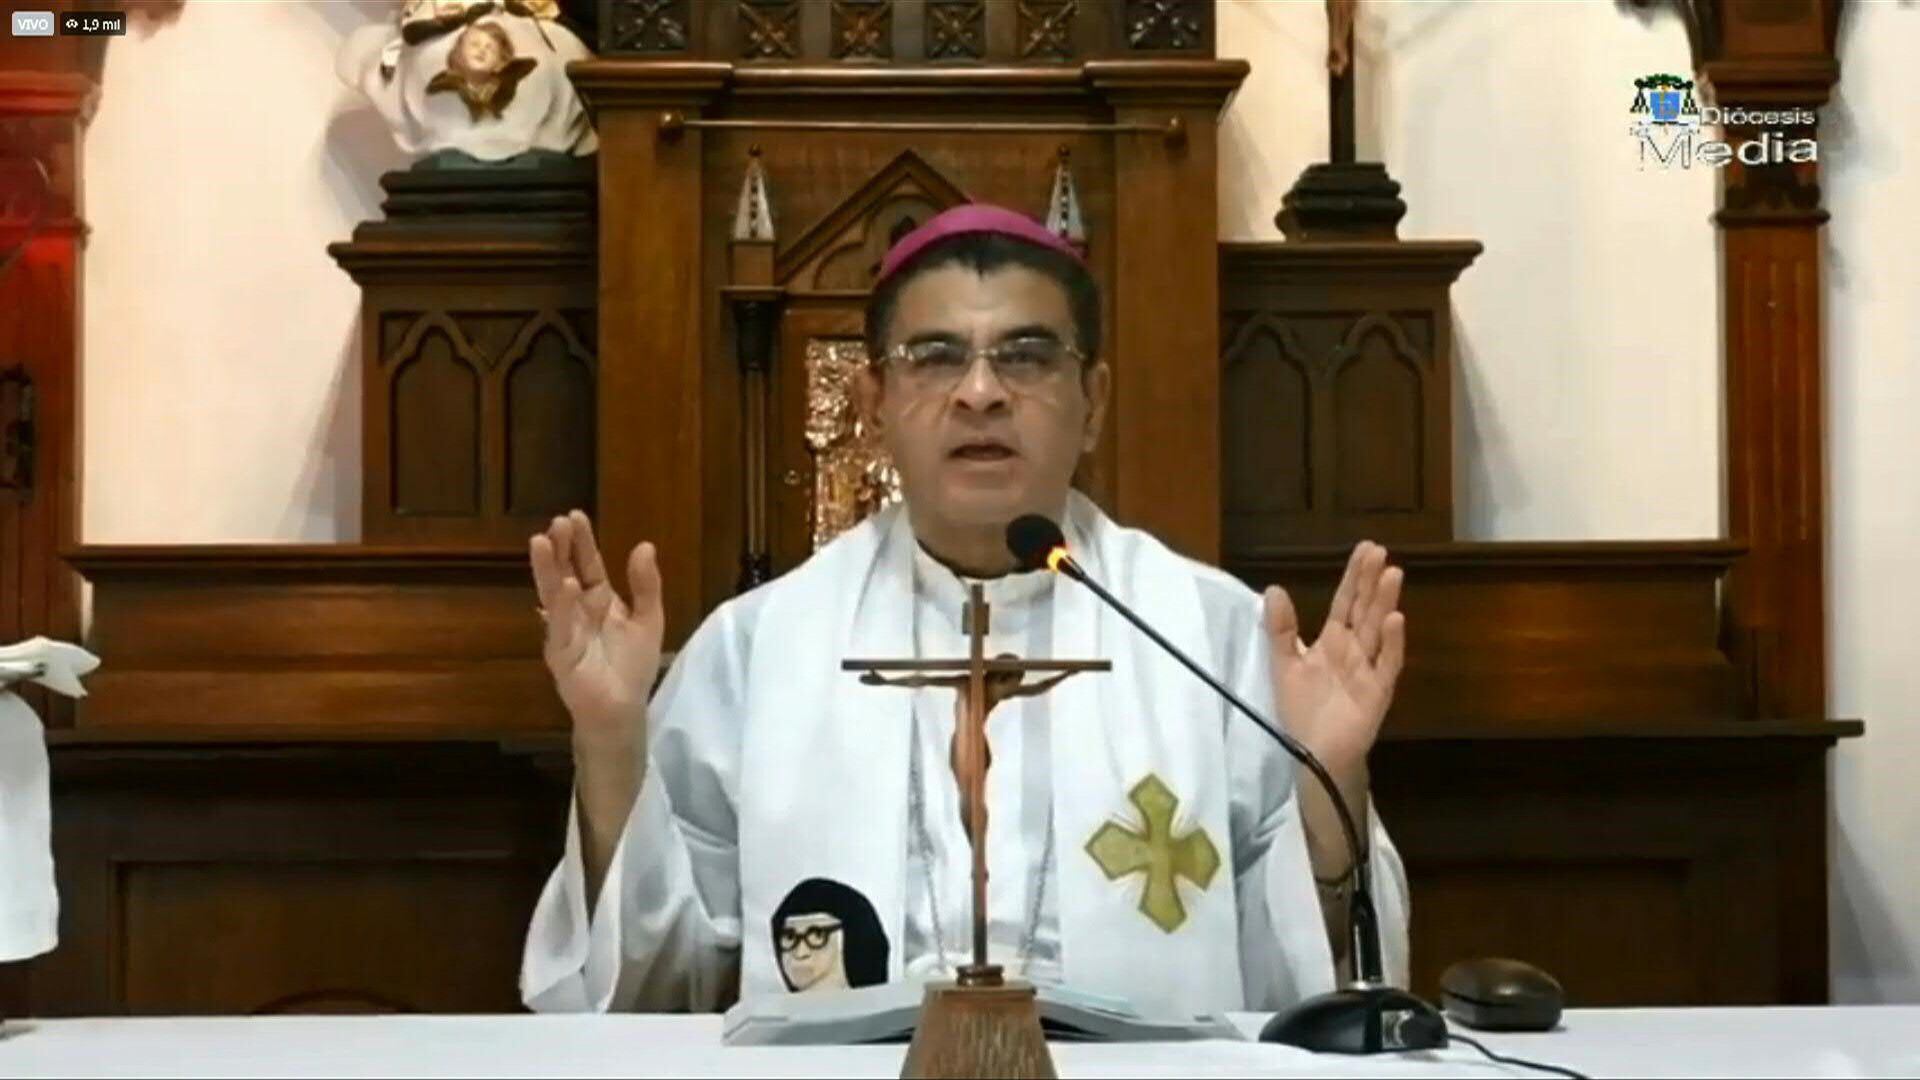 El obispo nicaragüense Rolando Álvarez, crítico con el régimen de Daniel Ortega, continúa confinado por la policía en la curia de Matagalpa, desde donde celebró una misa transmitida por Facebook